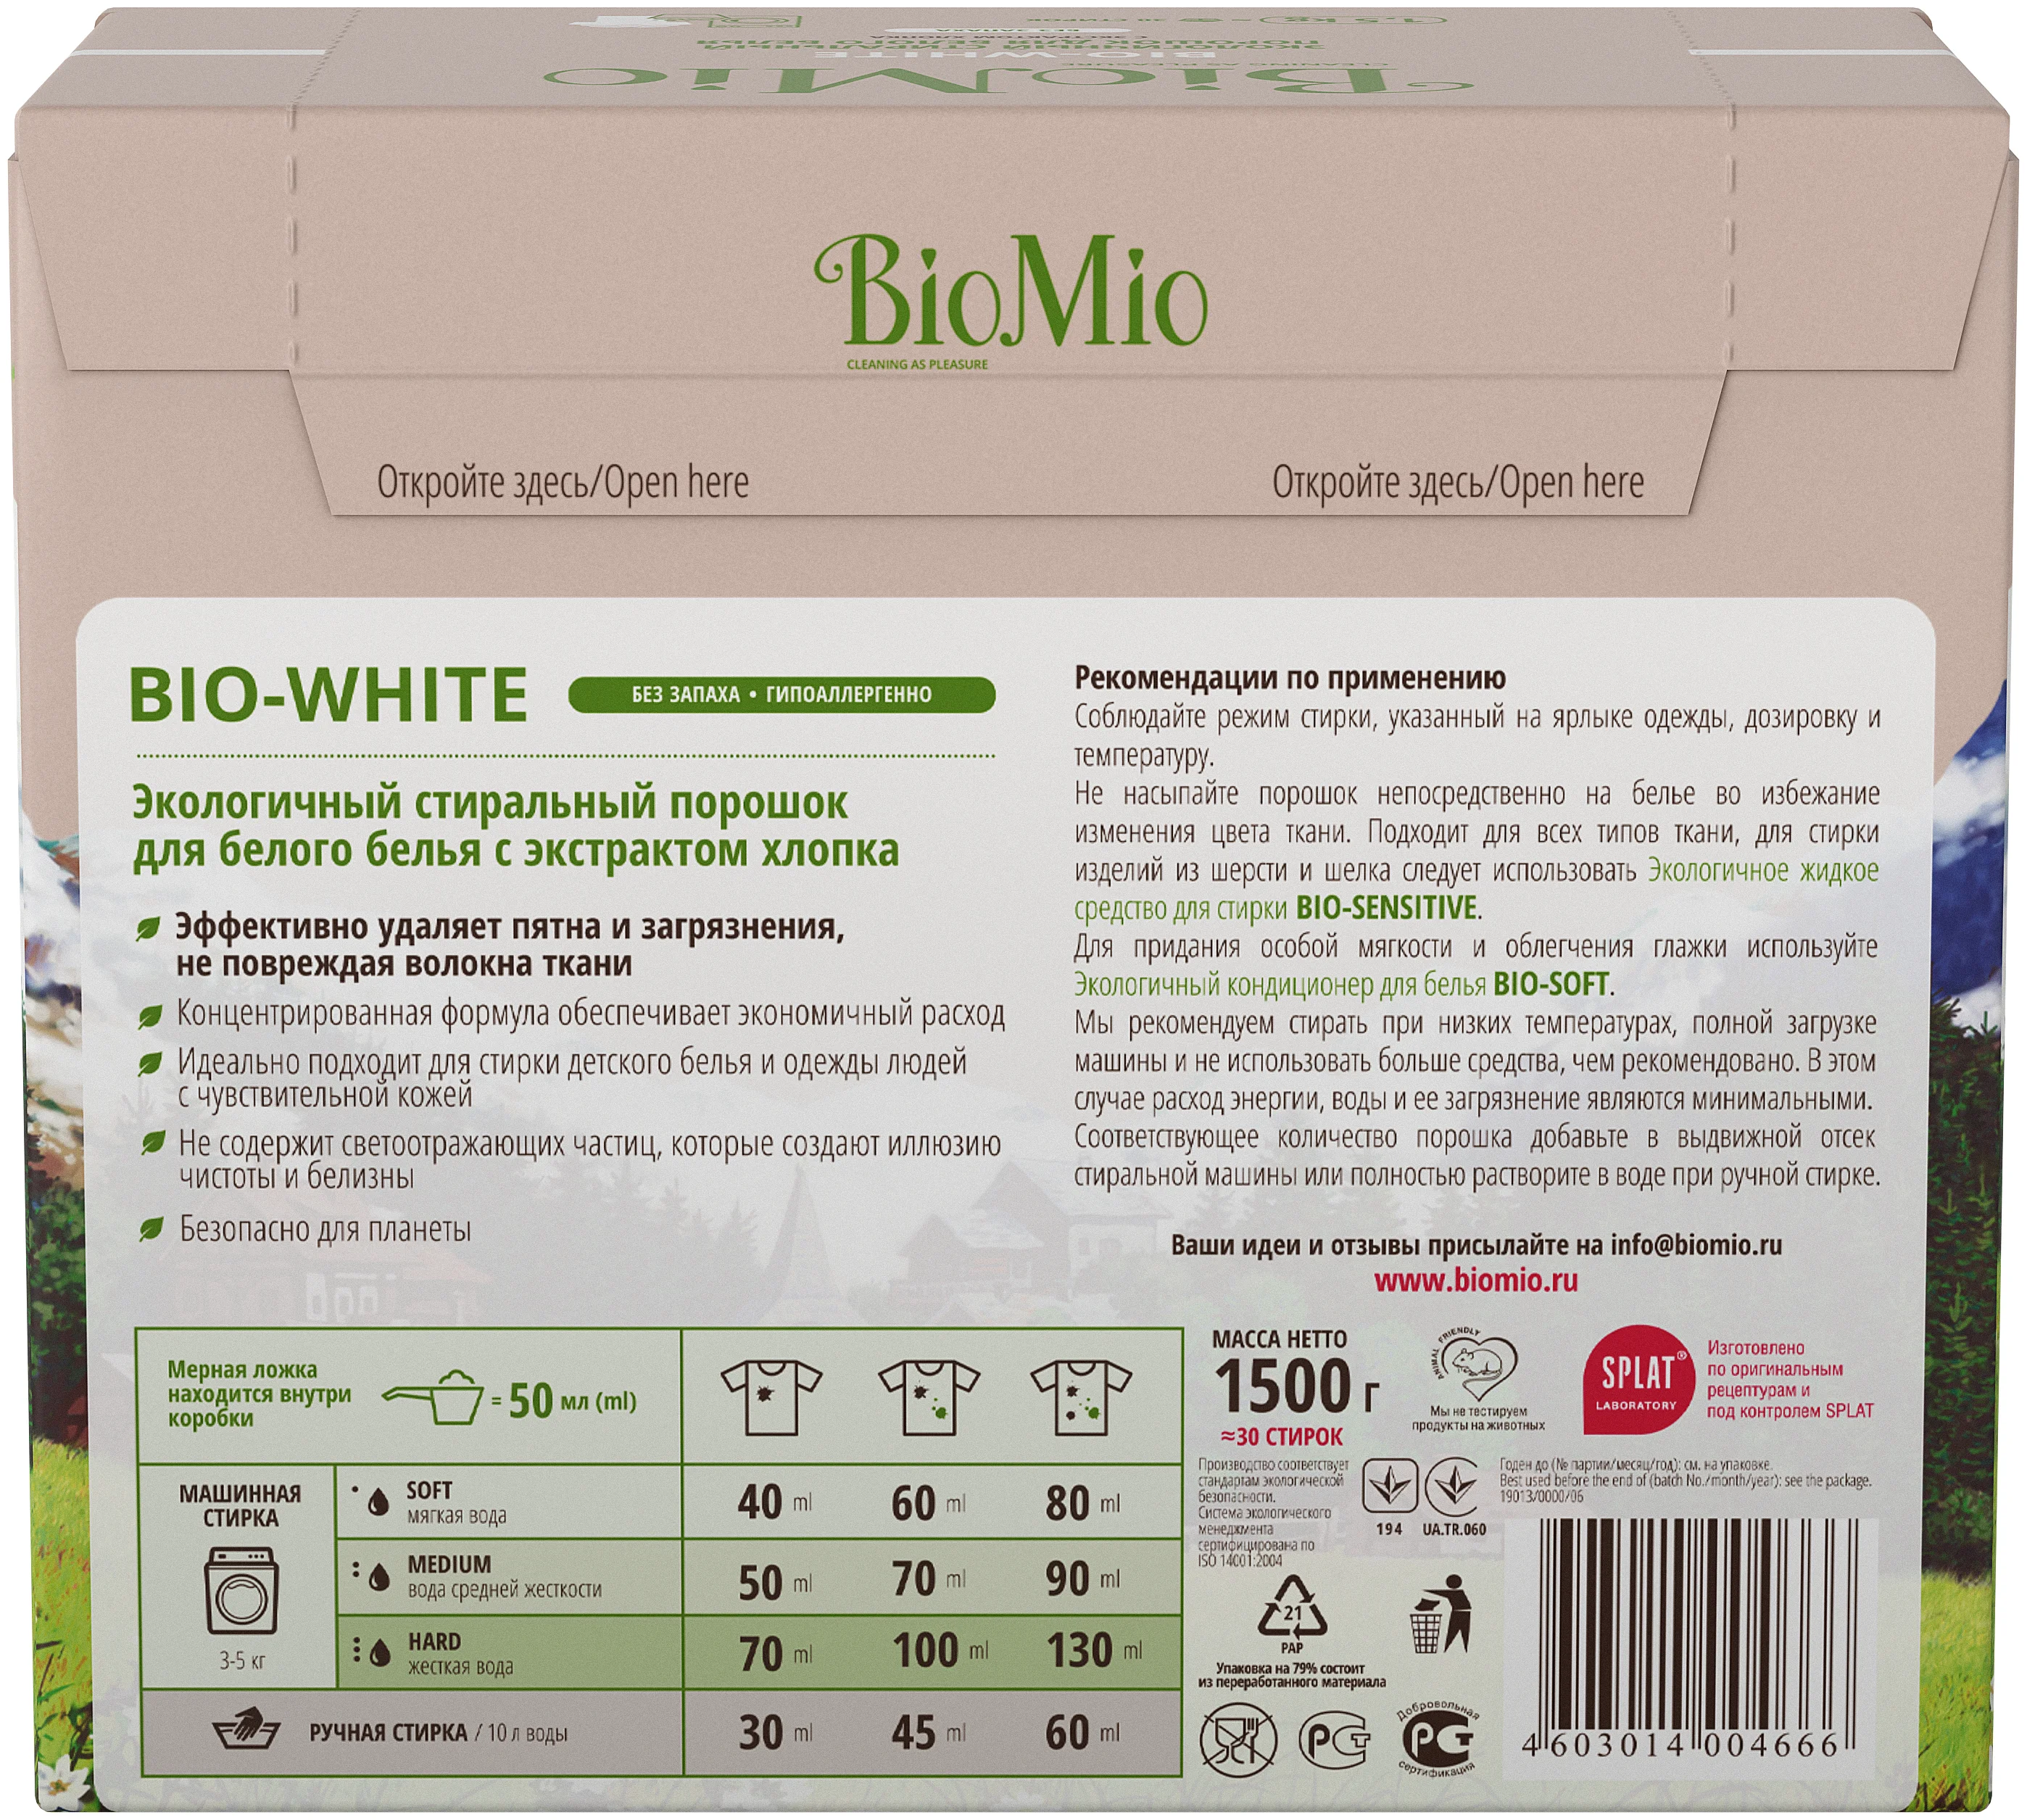 BioMio BIO-WHITE - назначение: для хлопковых тканей, для синтетических тканей, для белых и светлых тканей